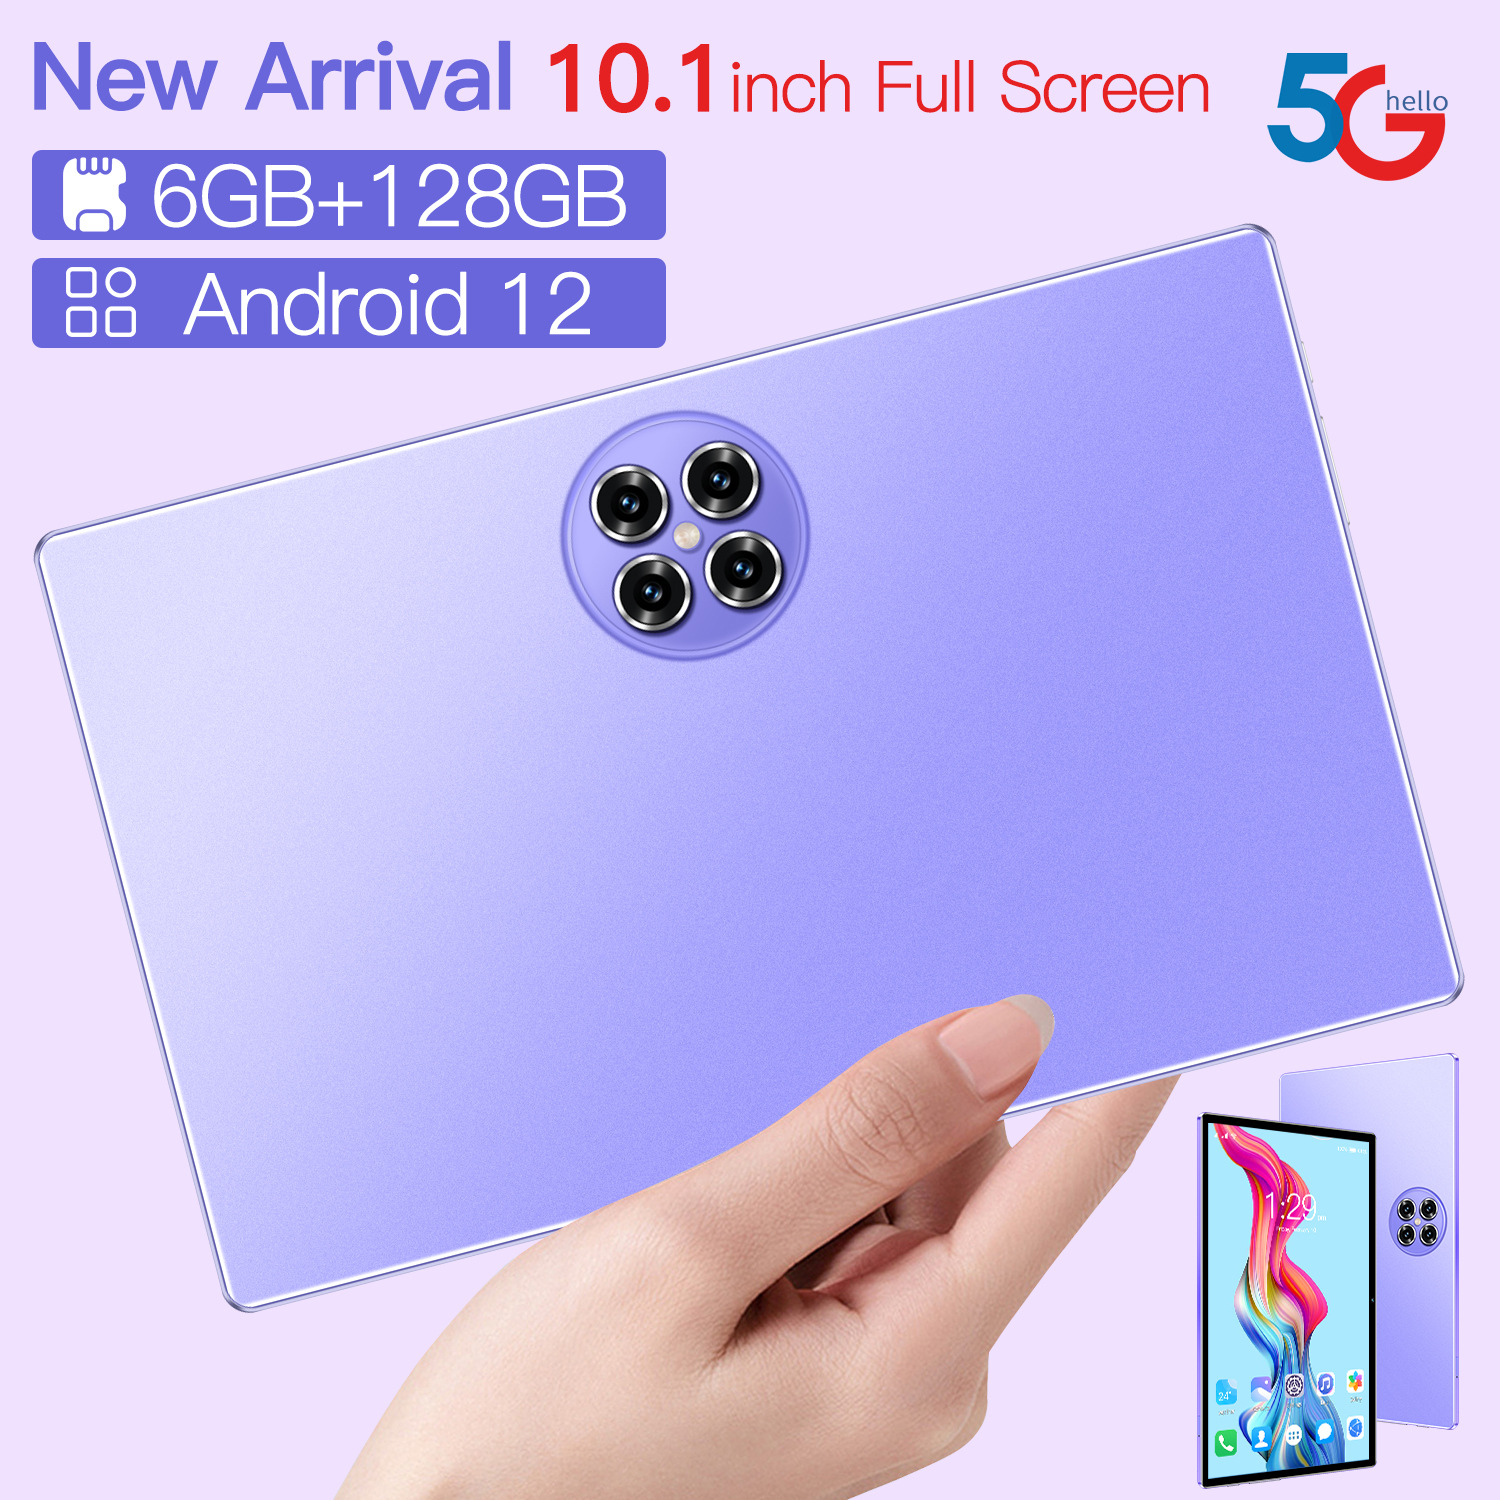 Factory Groothandel Nieuwe 10.1-inch Android Tablet HD Glass GPS Bluetooth 4G grensoverschrijdende e-commerce buitenlandse handel